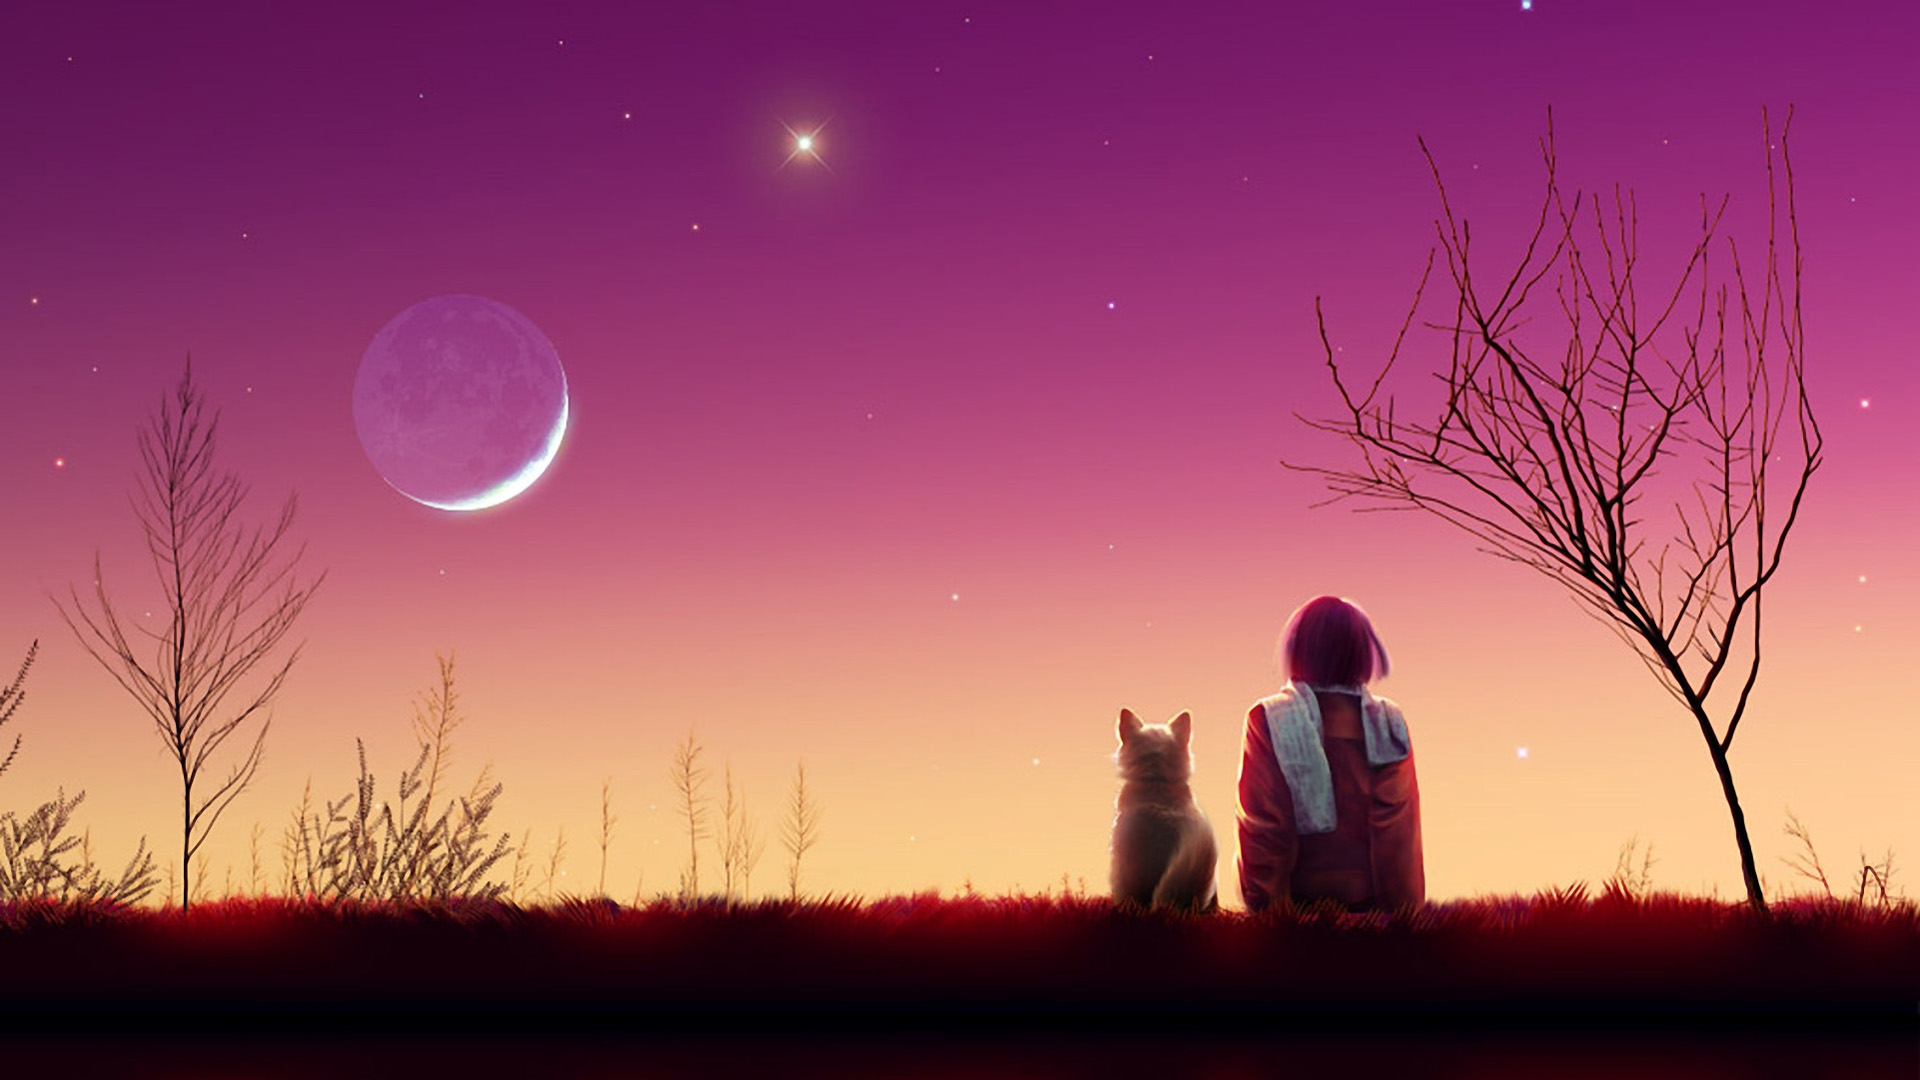 夜间,女孩,小狗,风景,月亮,星星,唯美加贺屋桌面壁纸